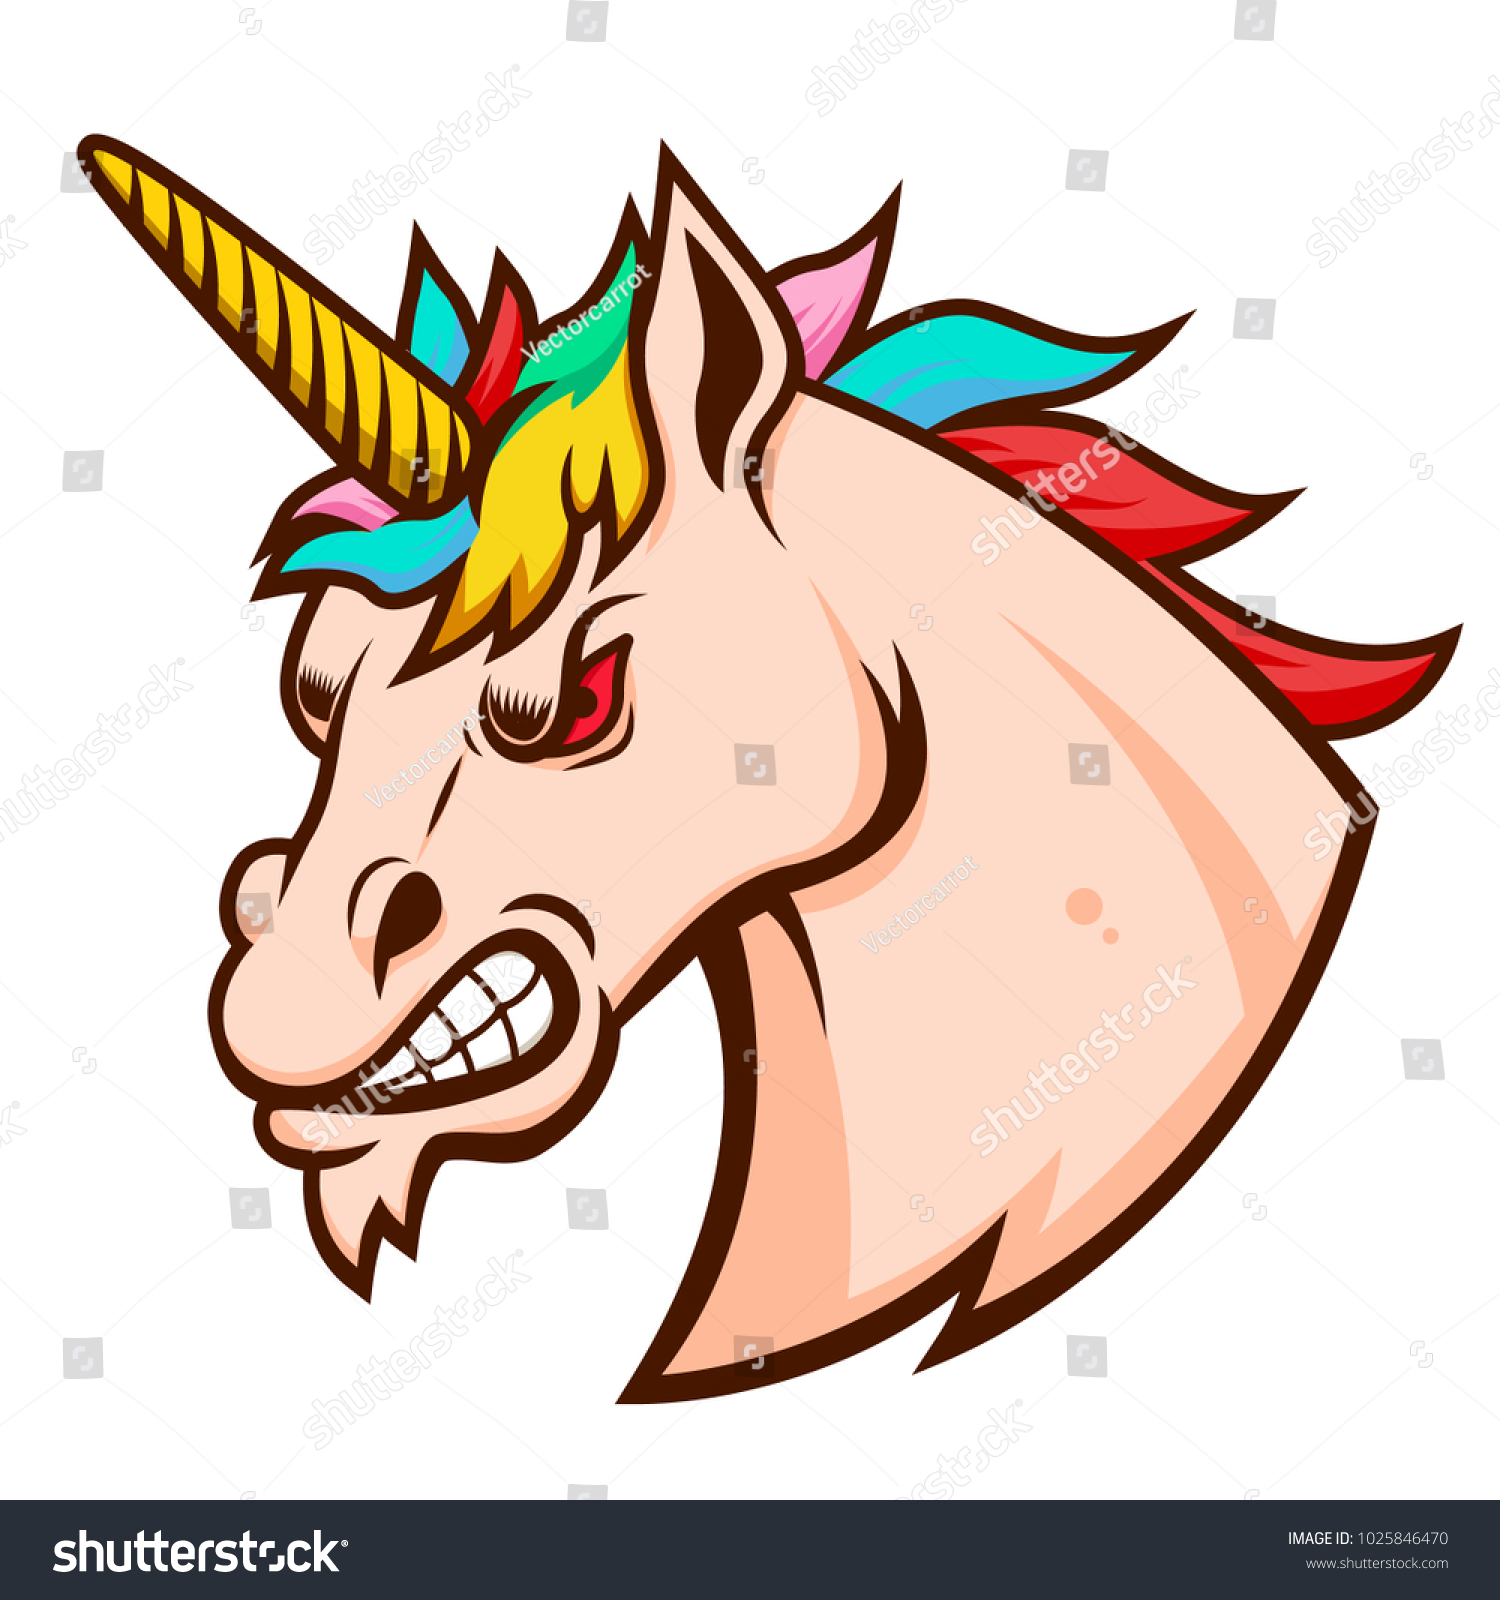 SVG of Angry unicorn head. Design element for logo, label, emblem, sign. Vector illustration svg